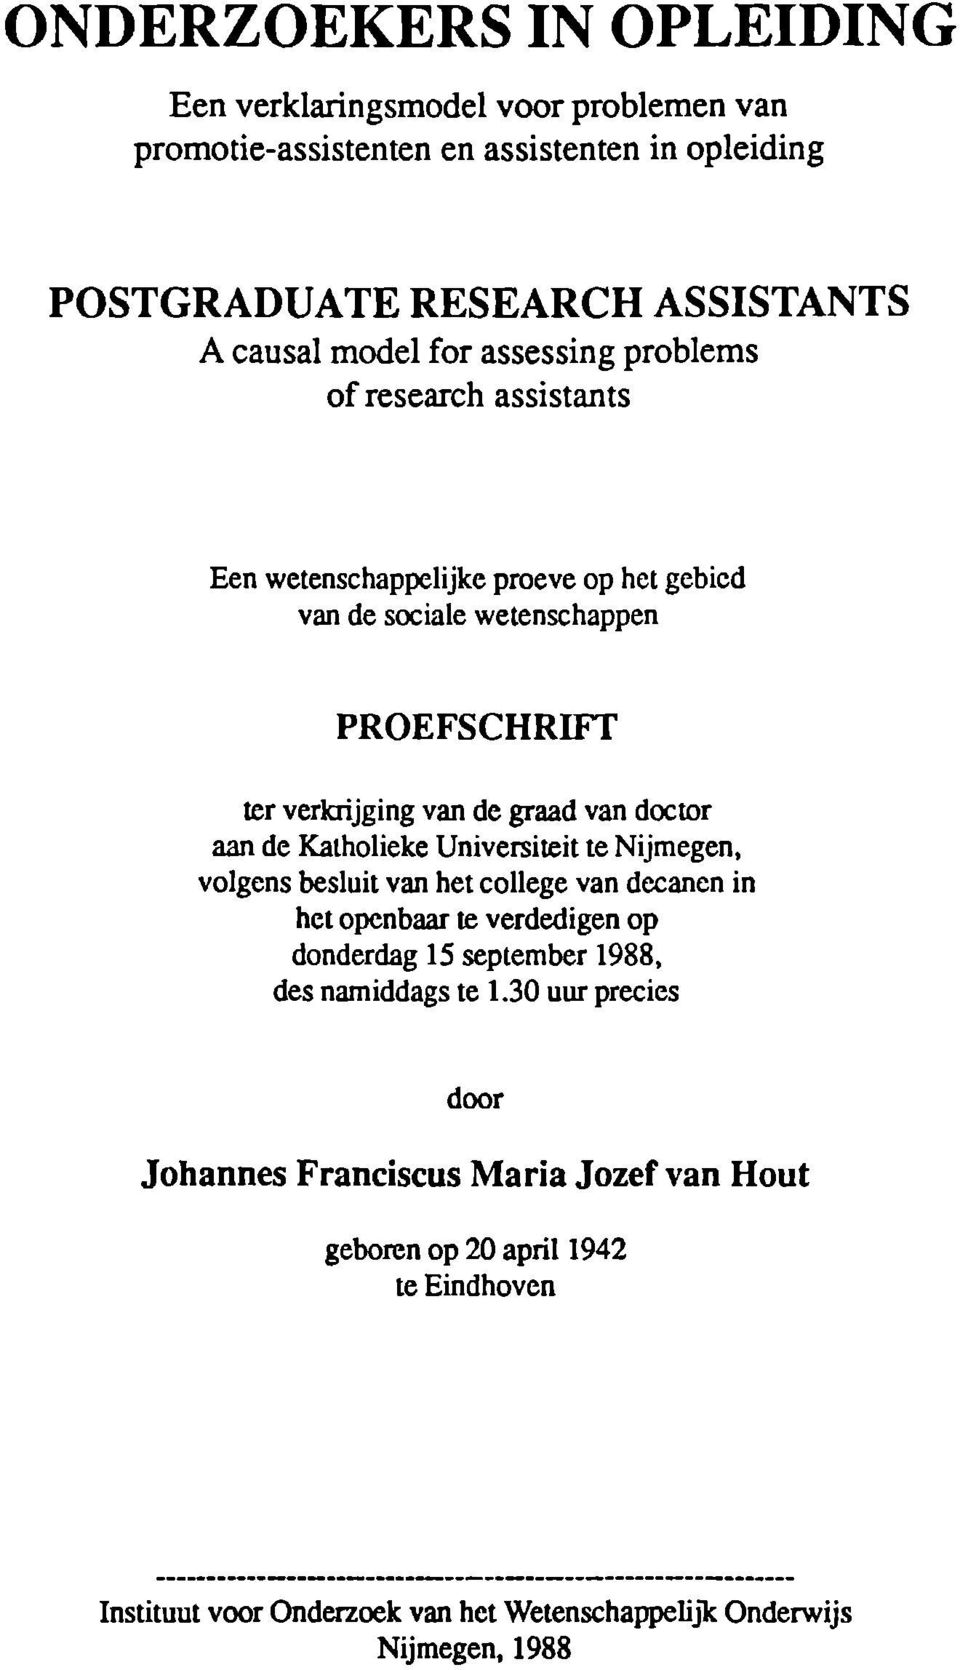 aan de Katholieke Universiteit te Nijmegen, volgens besluit van het college van decanen in het openbaar te verdedigen op donderdag 15 september 1988, des namiddags te 1.